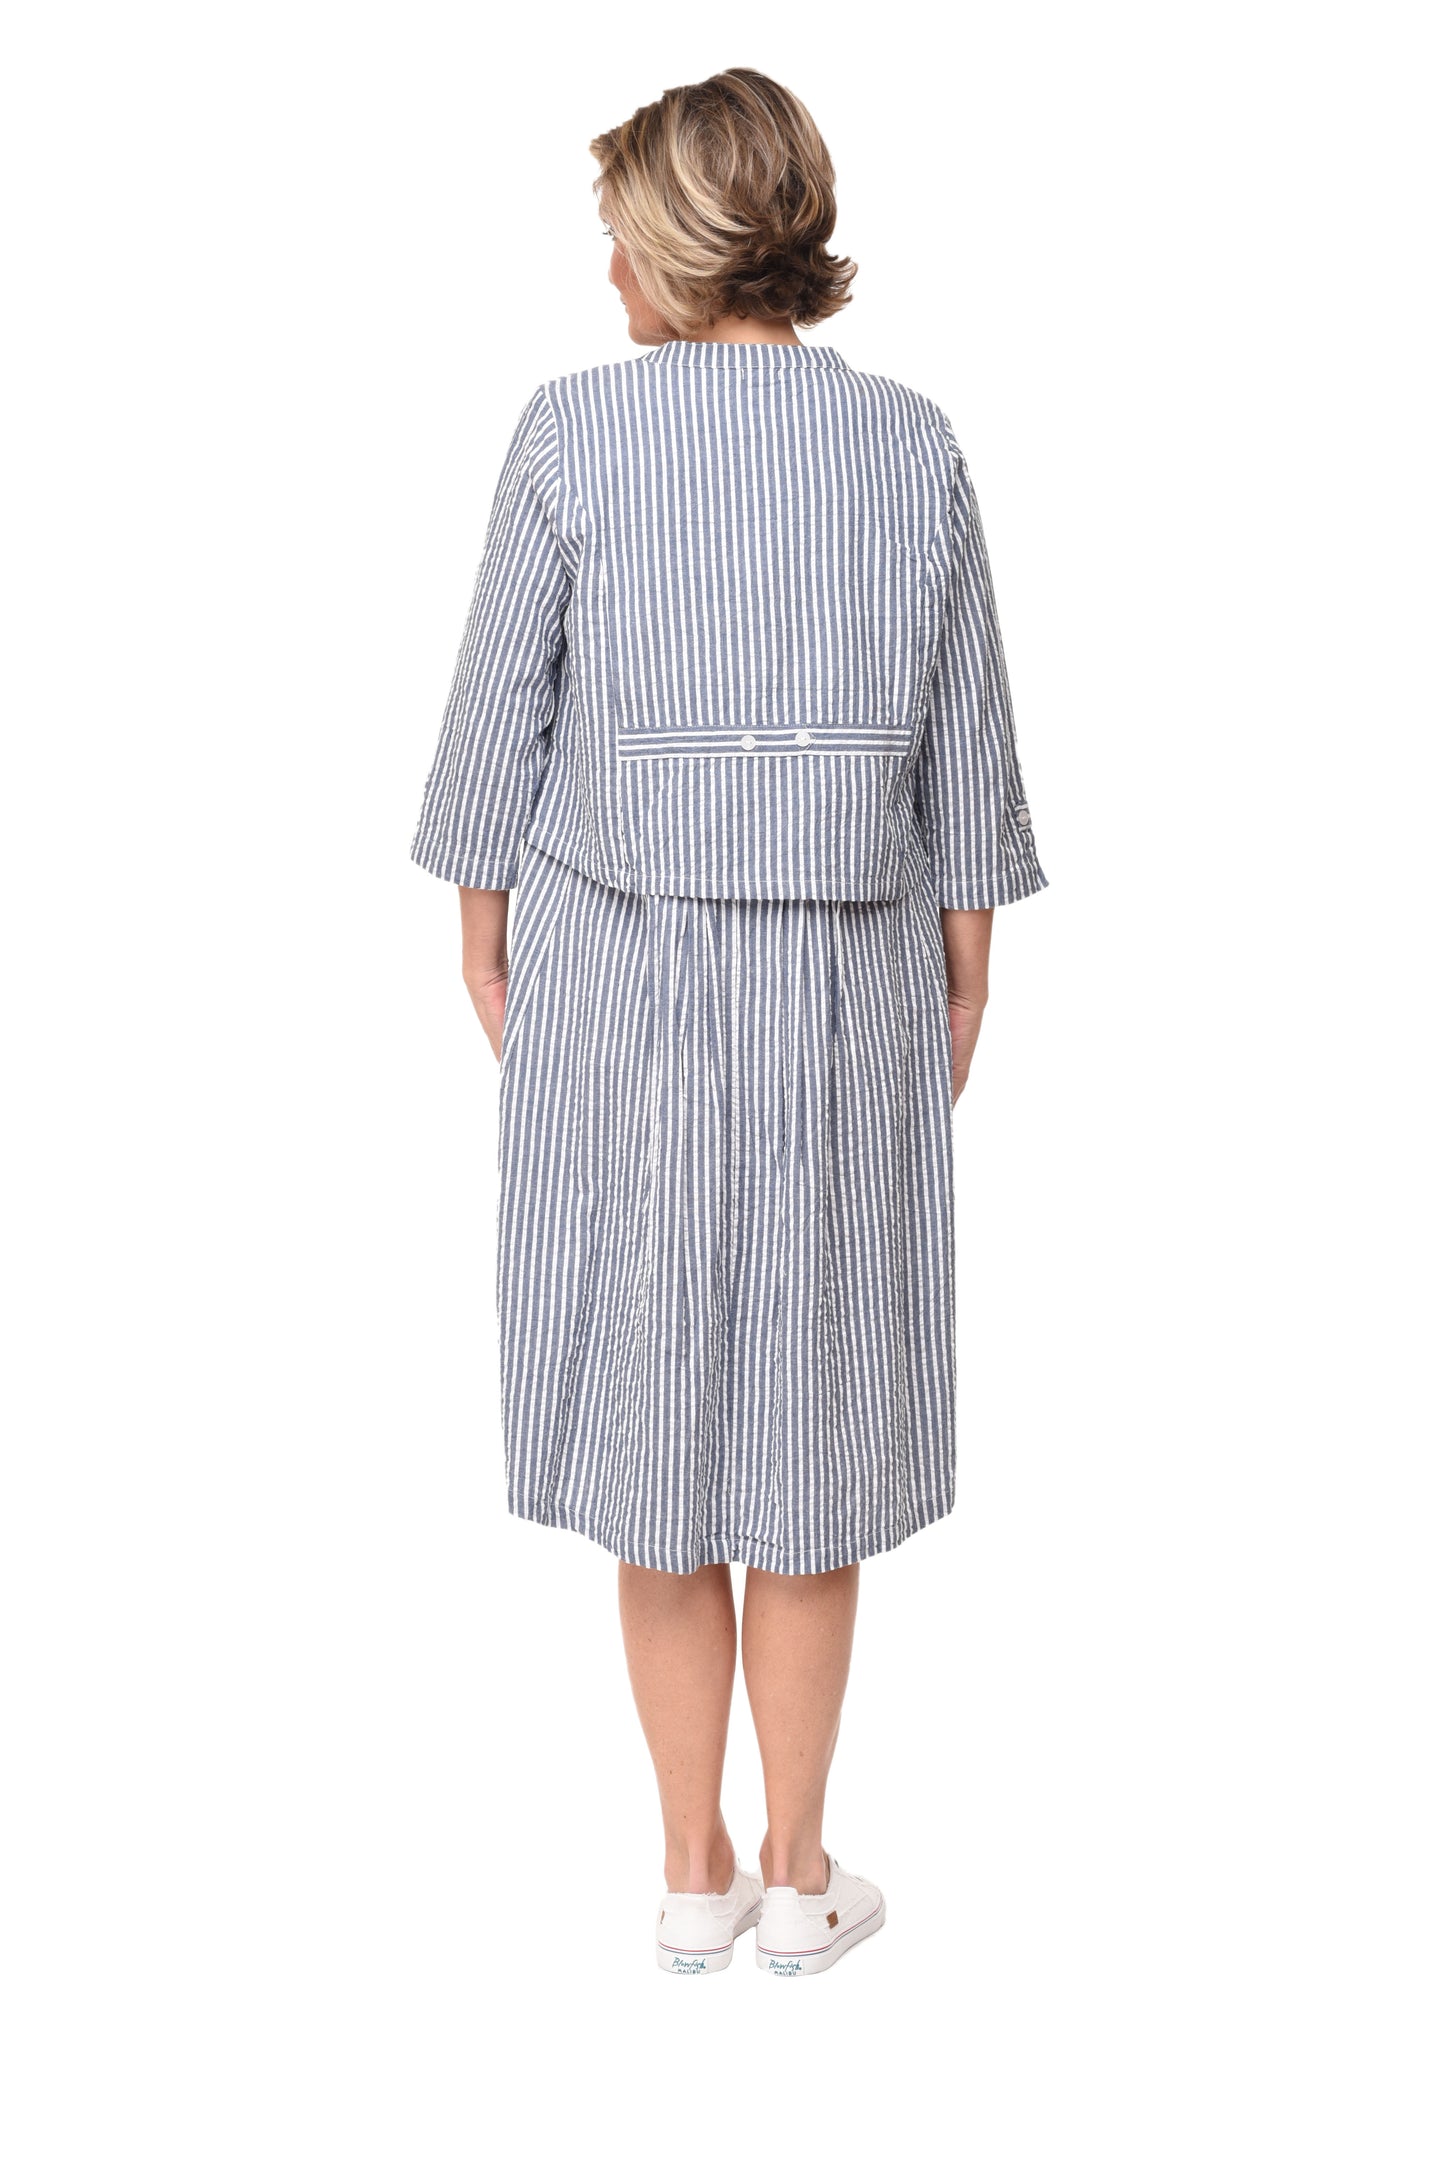 CV1069 Lennon Dress in Marina White Seersucker Stripe*